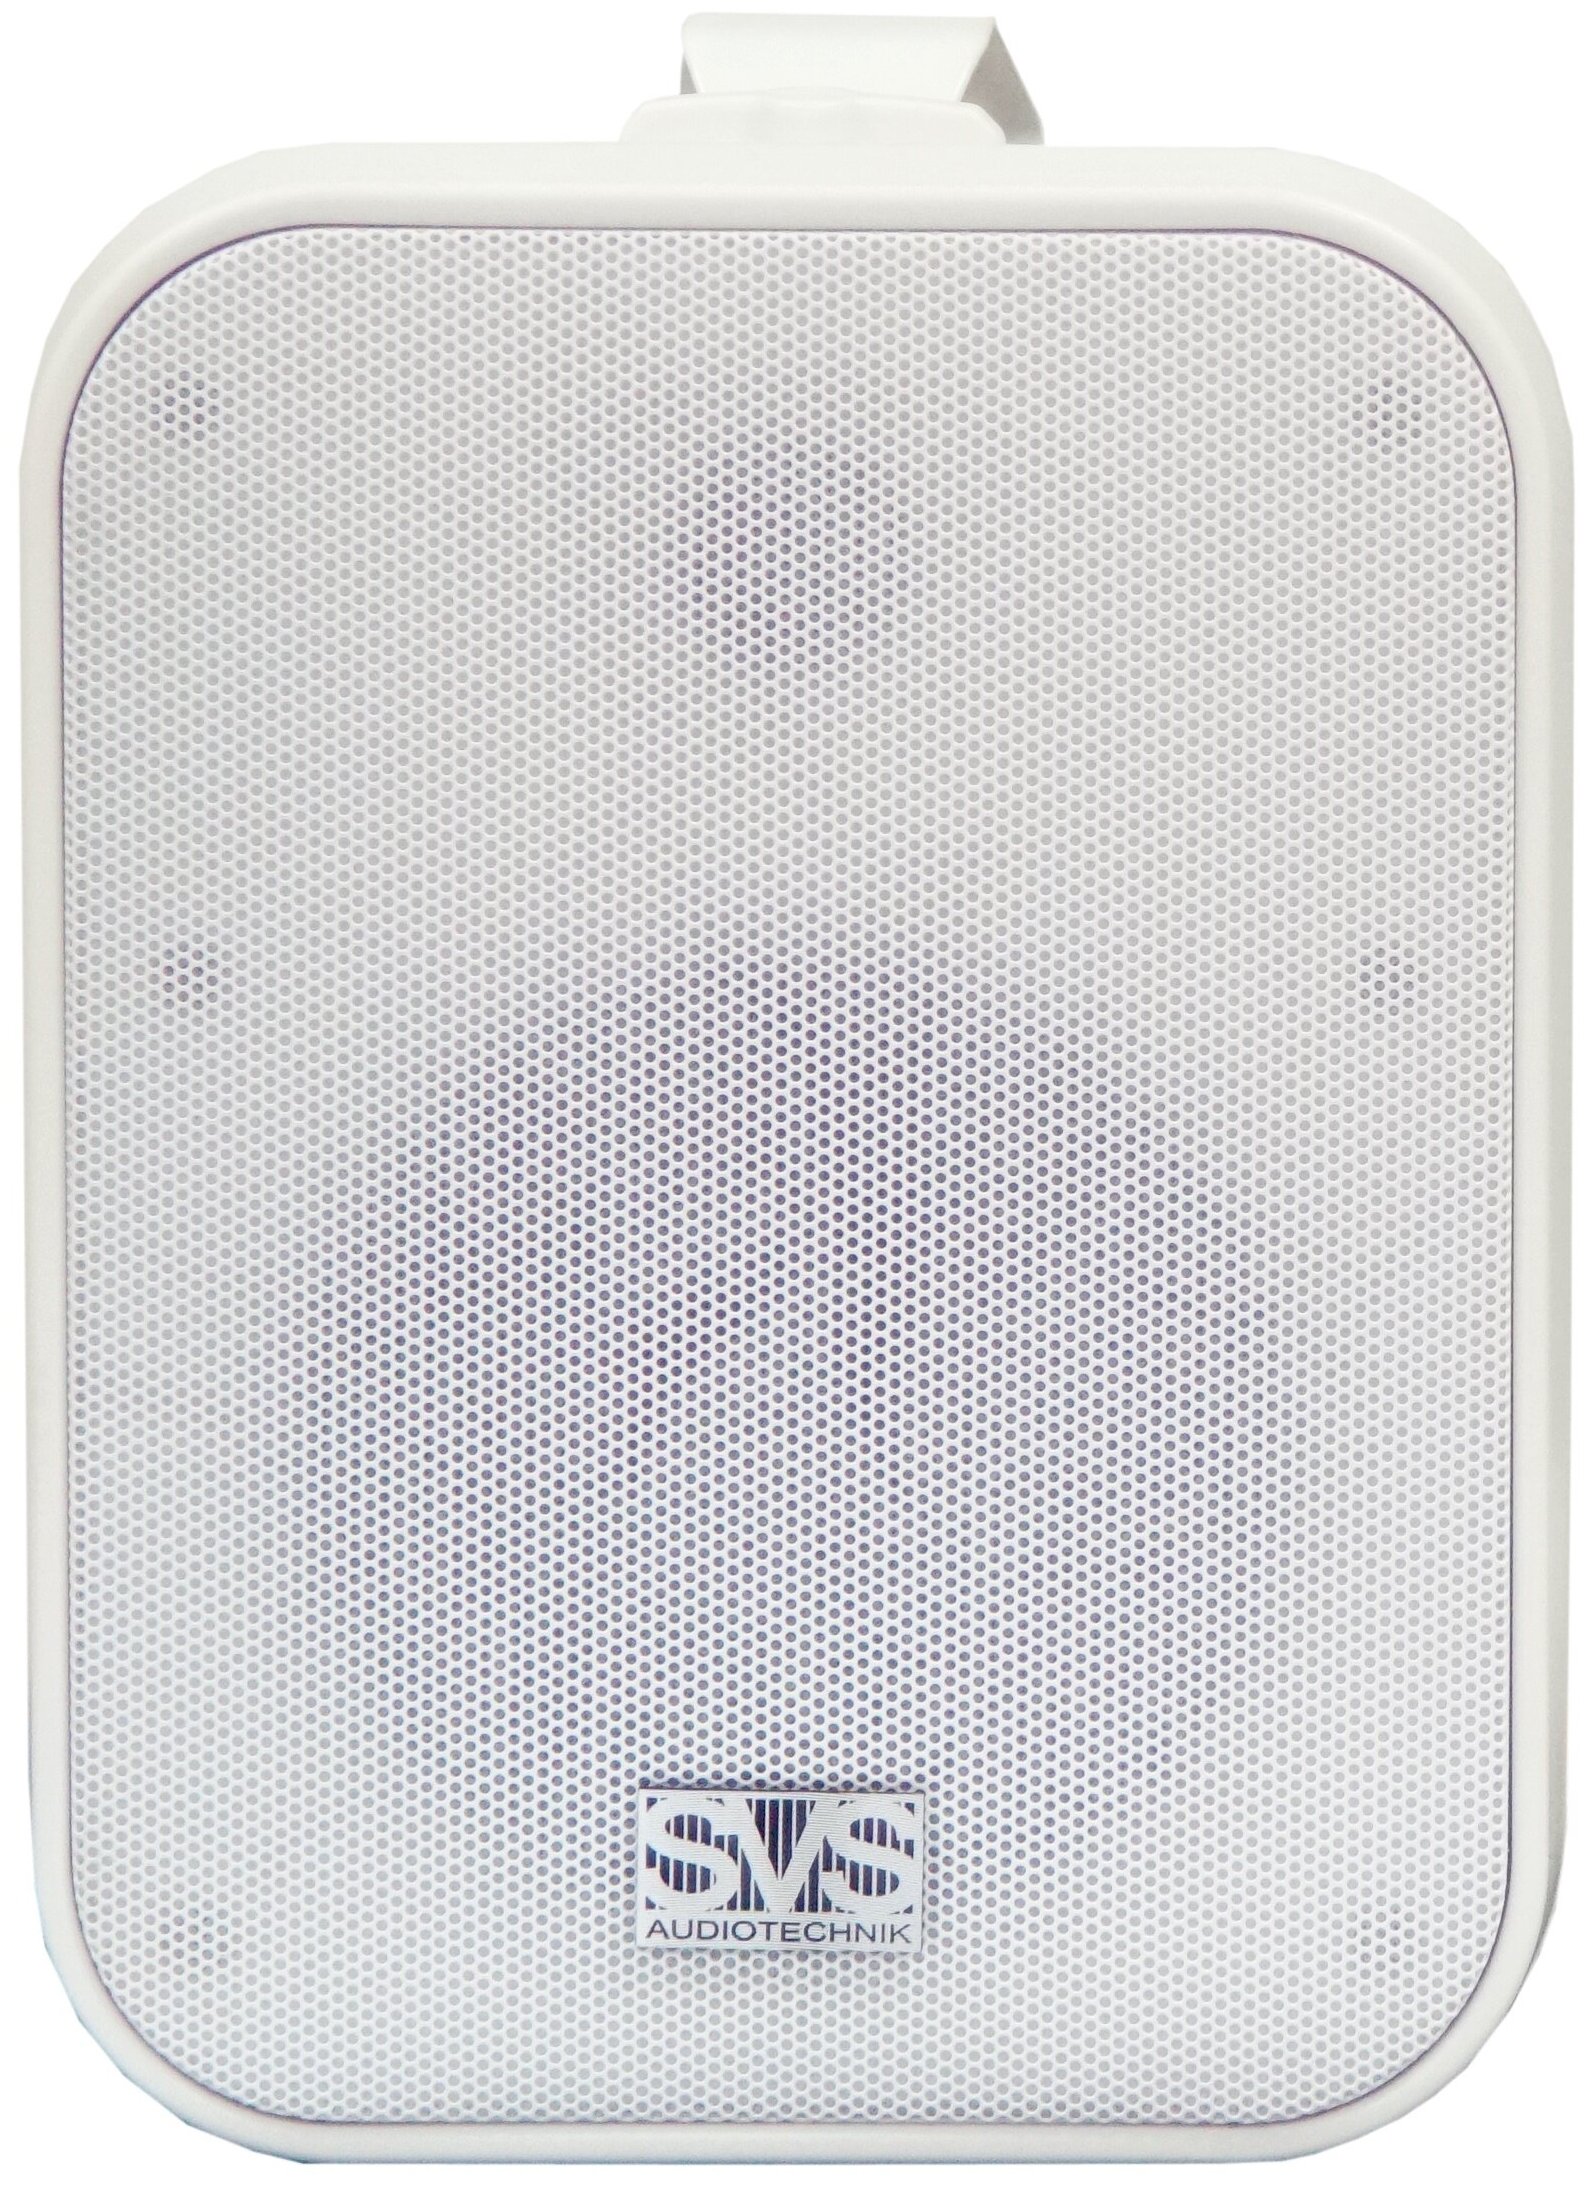 Громкоговоритель настенный (белый) SVS Audiotechnik WSP-60 White